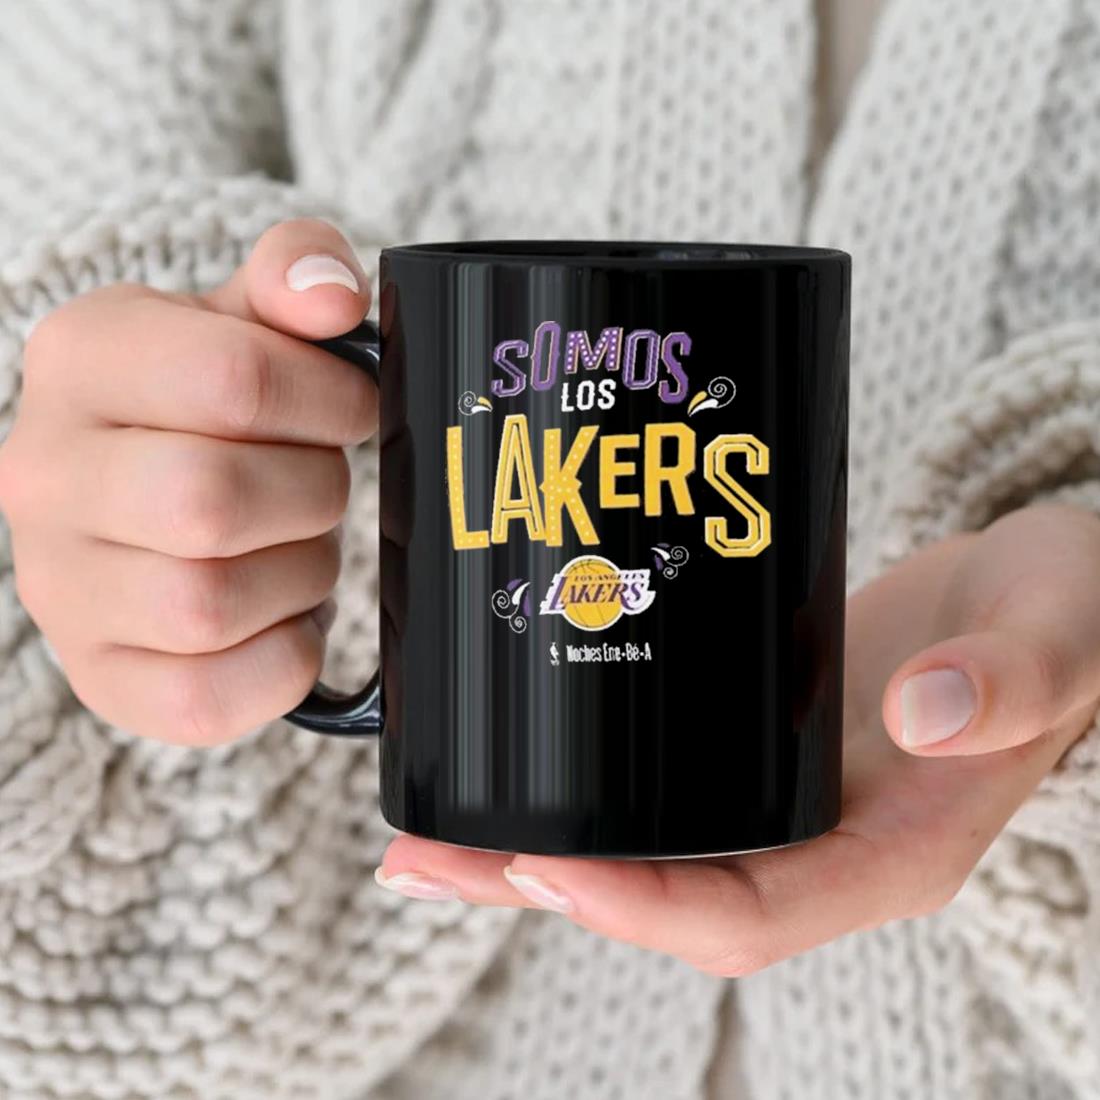 Somos Los Los Angeles Lakers Noches Ene-be-a Mug nhu